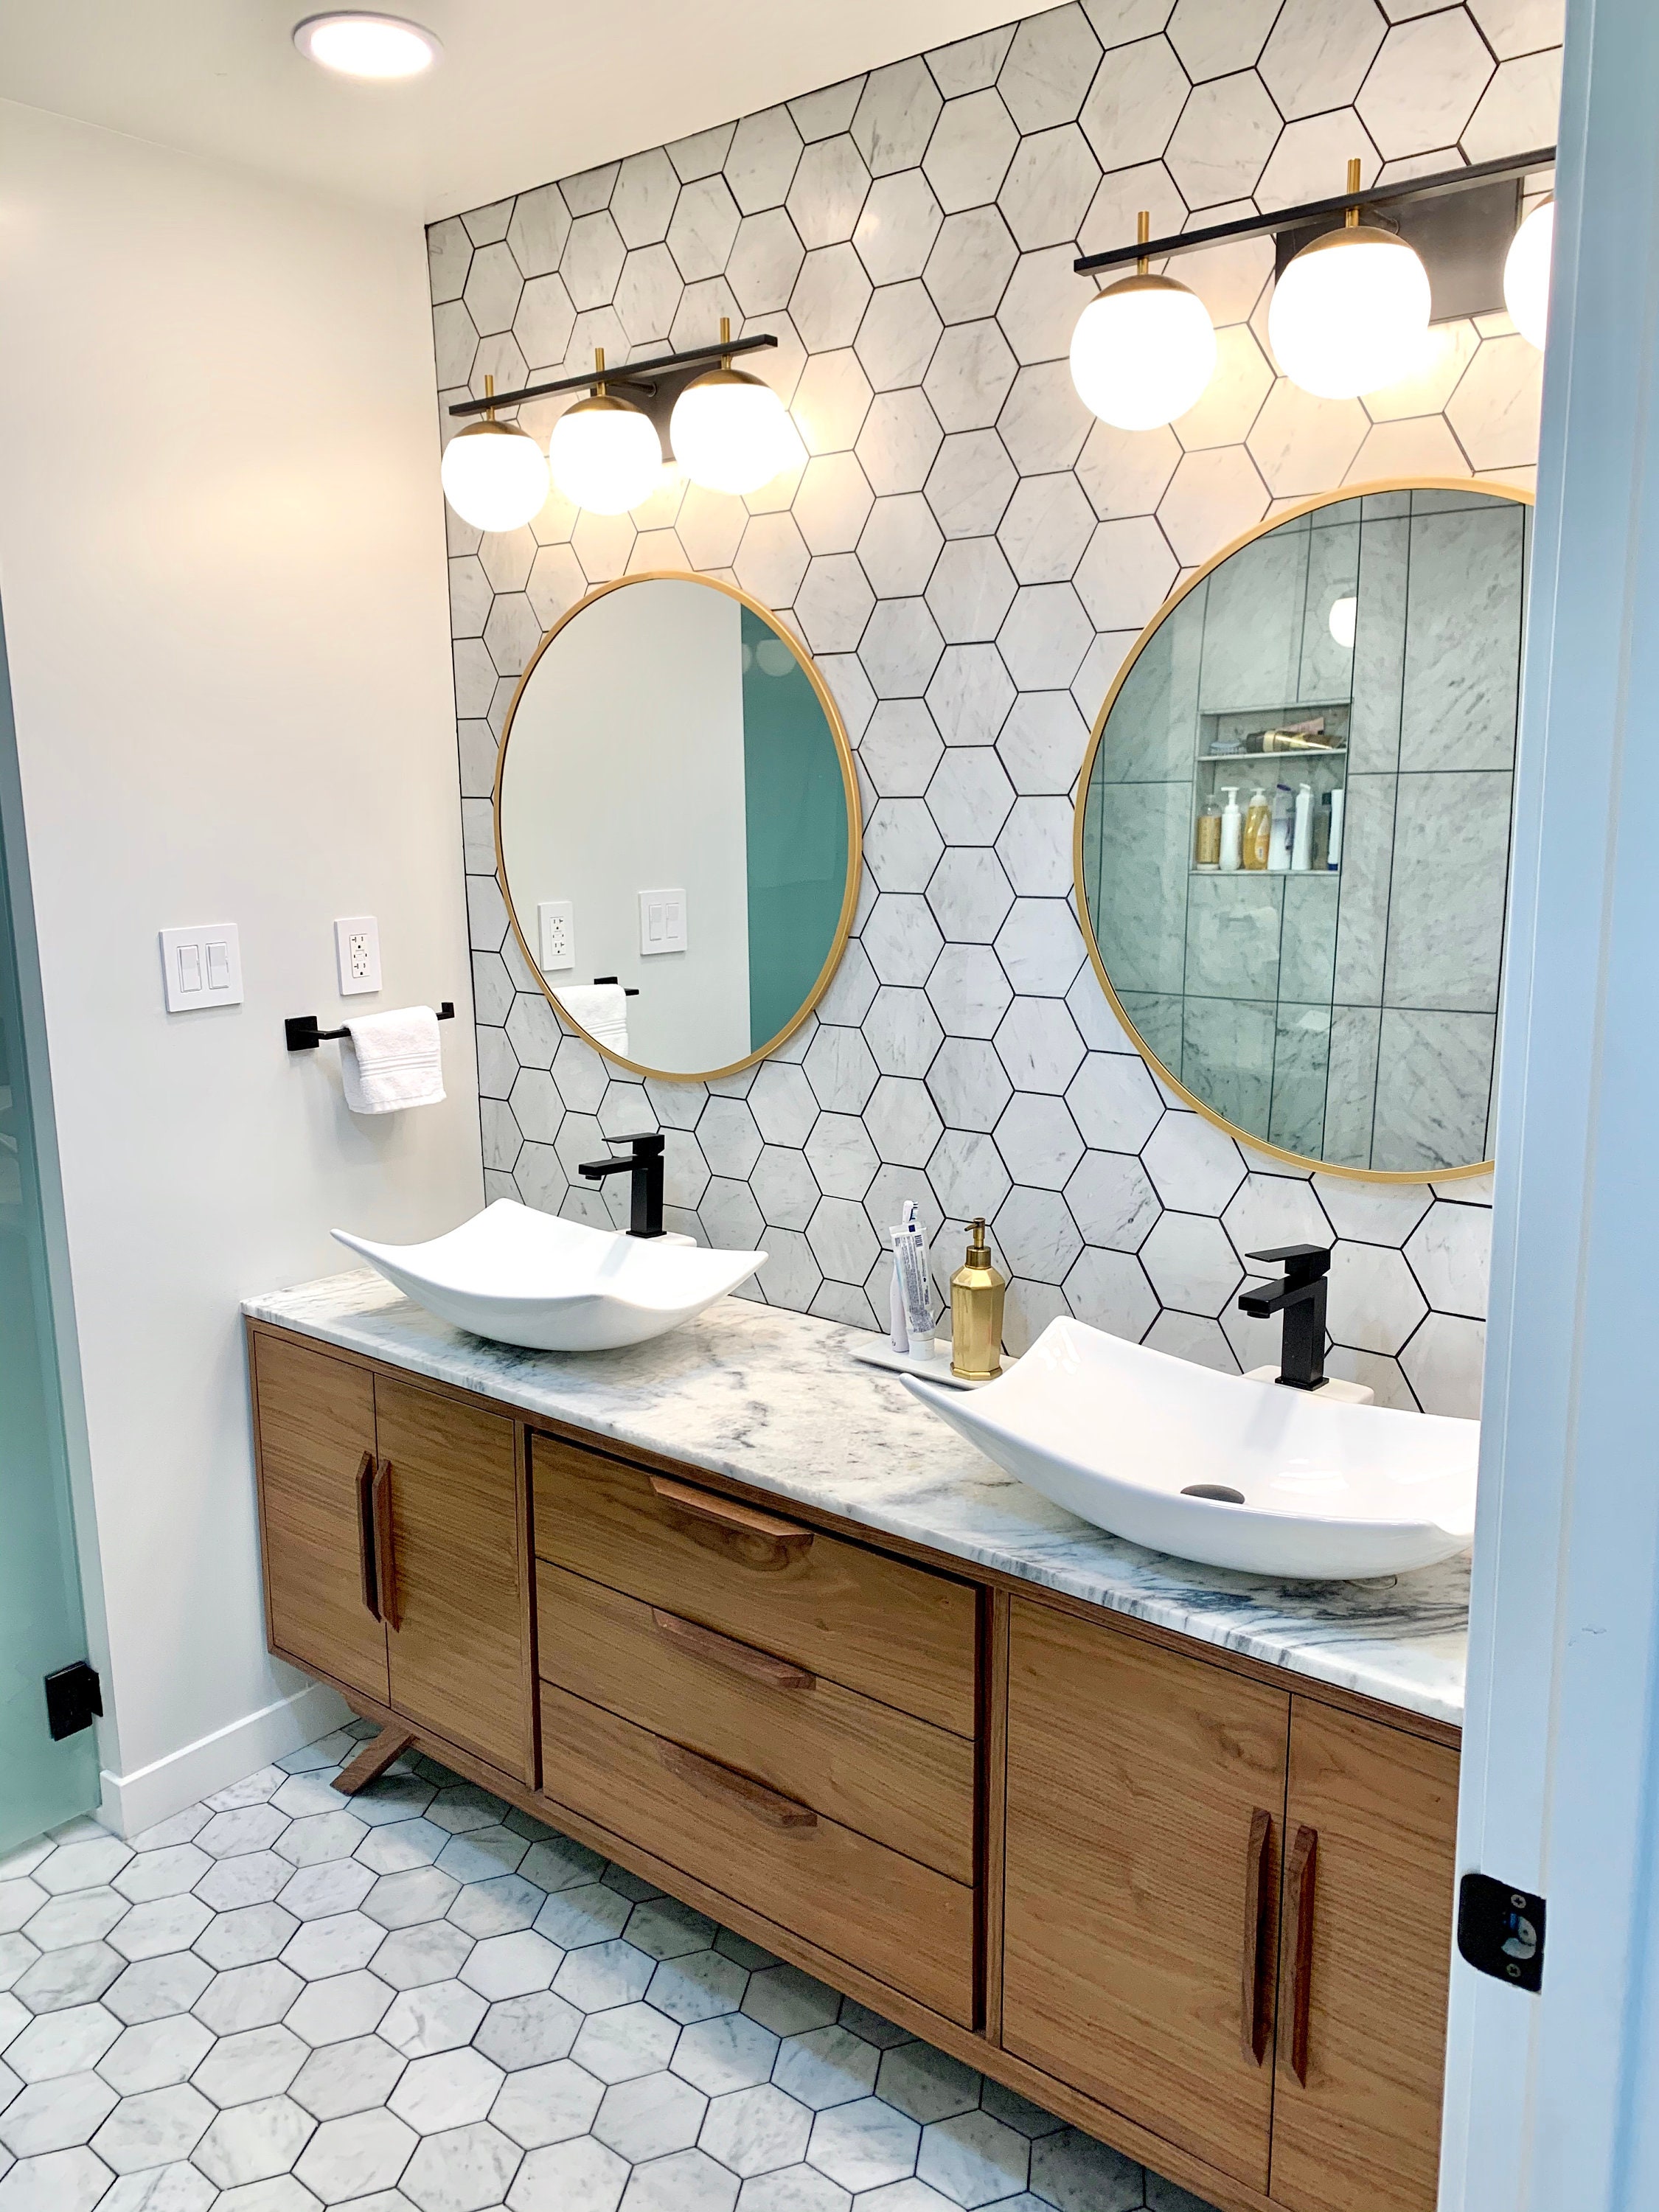 21.6 in. Wood Bathroom Vanity Top Sample, Bathroom Storage Cabinet